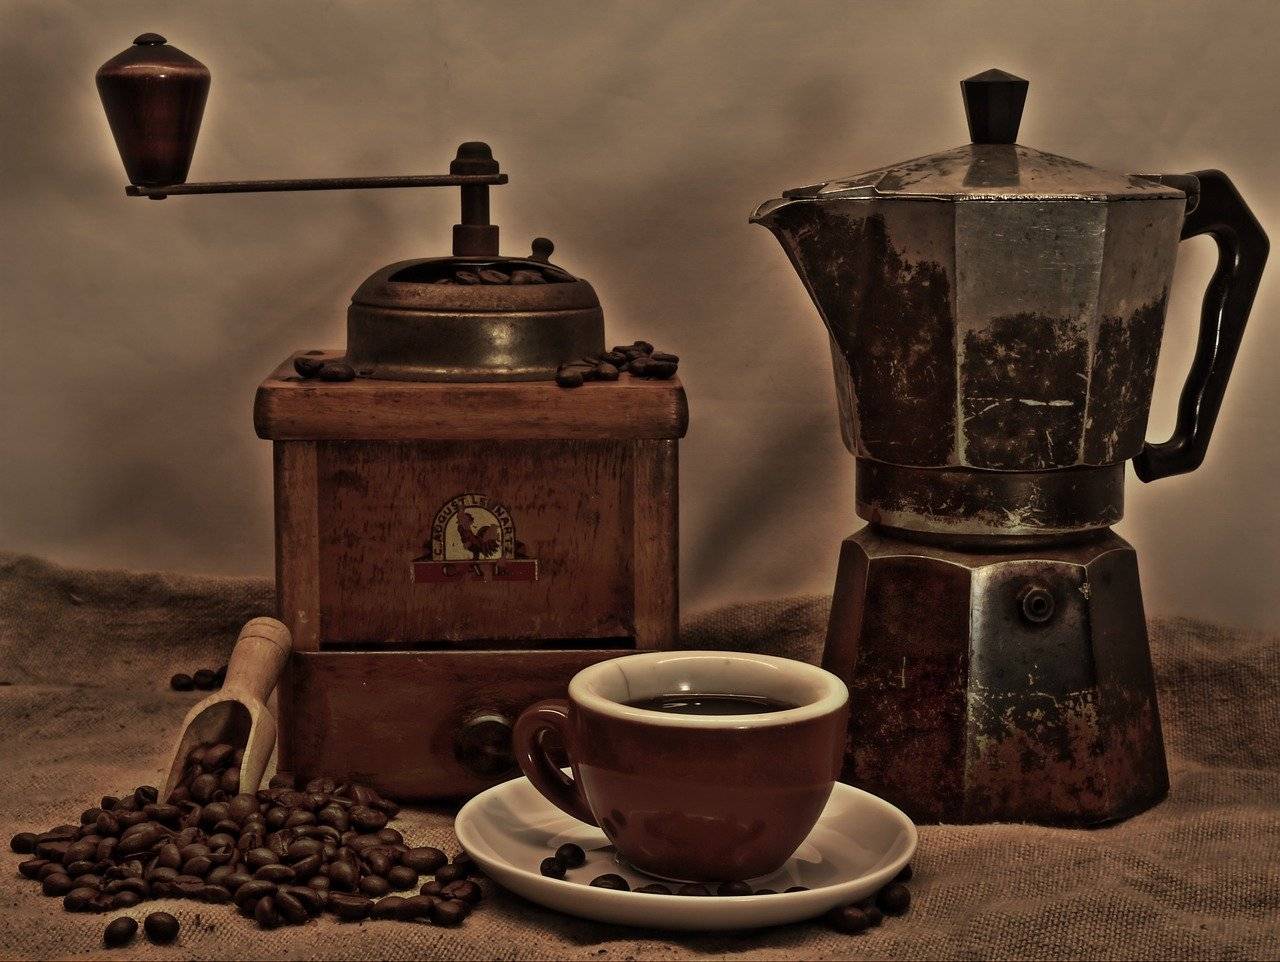 Интересные факты о кофе: история, статистика, традиции